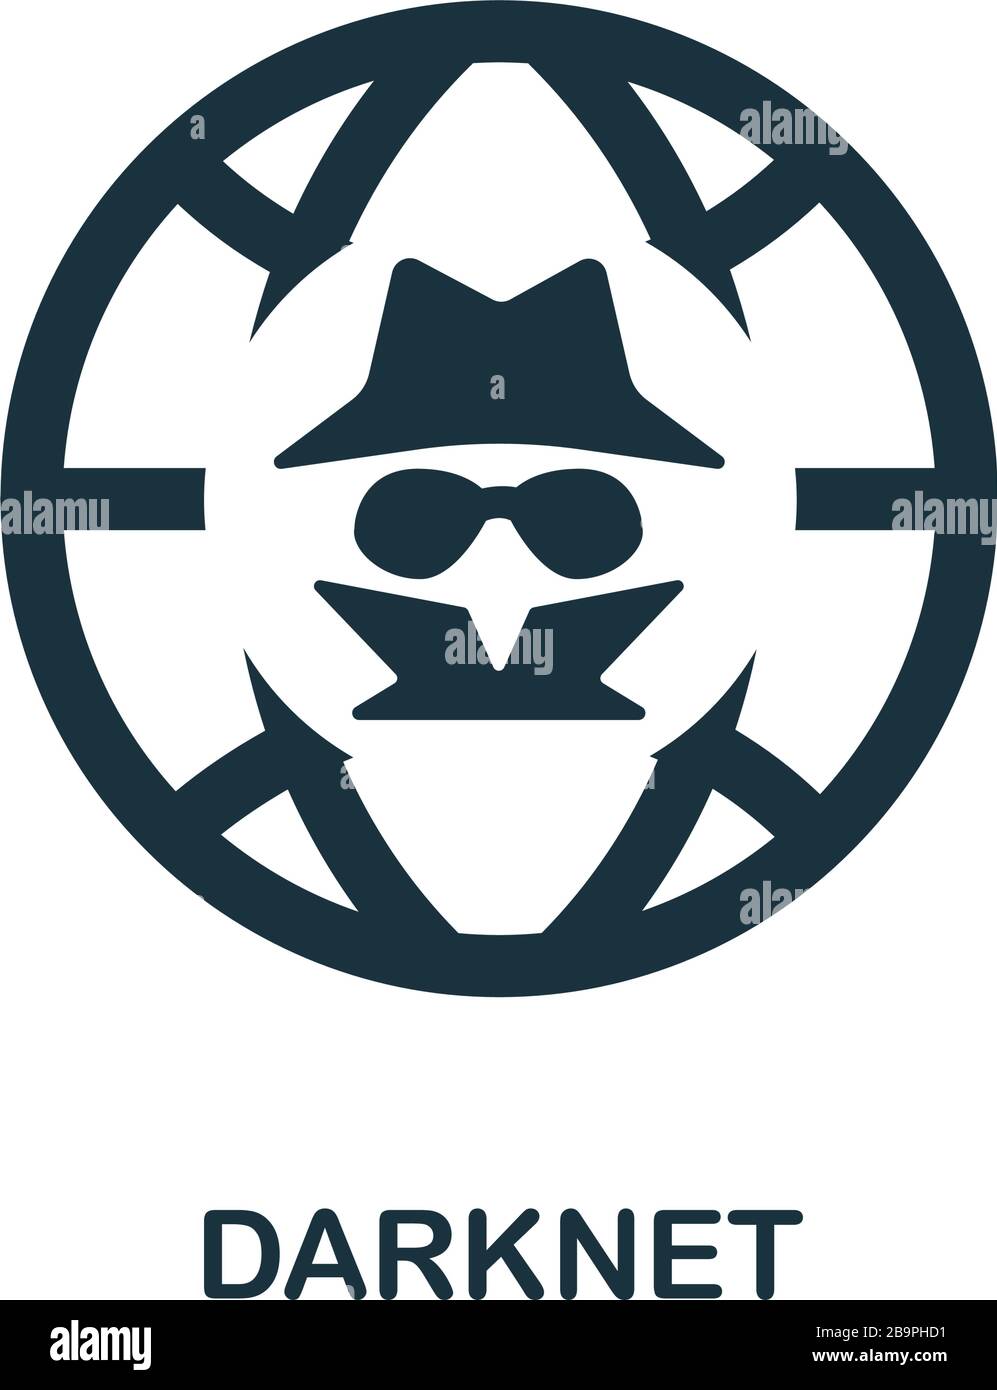 Darknet logo скачать браузер тор на пк торрентом megaruzxpnew4af